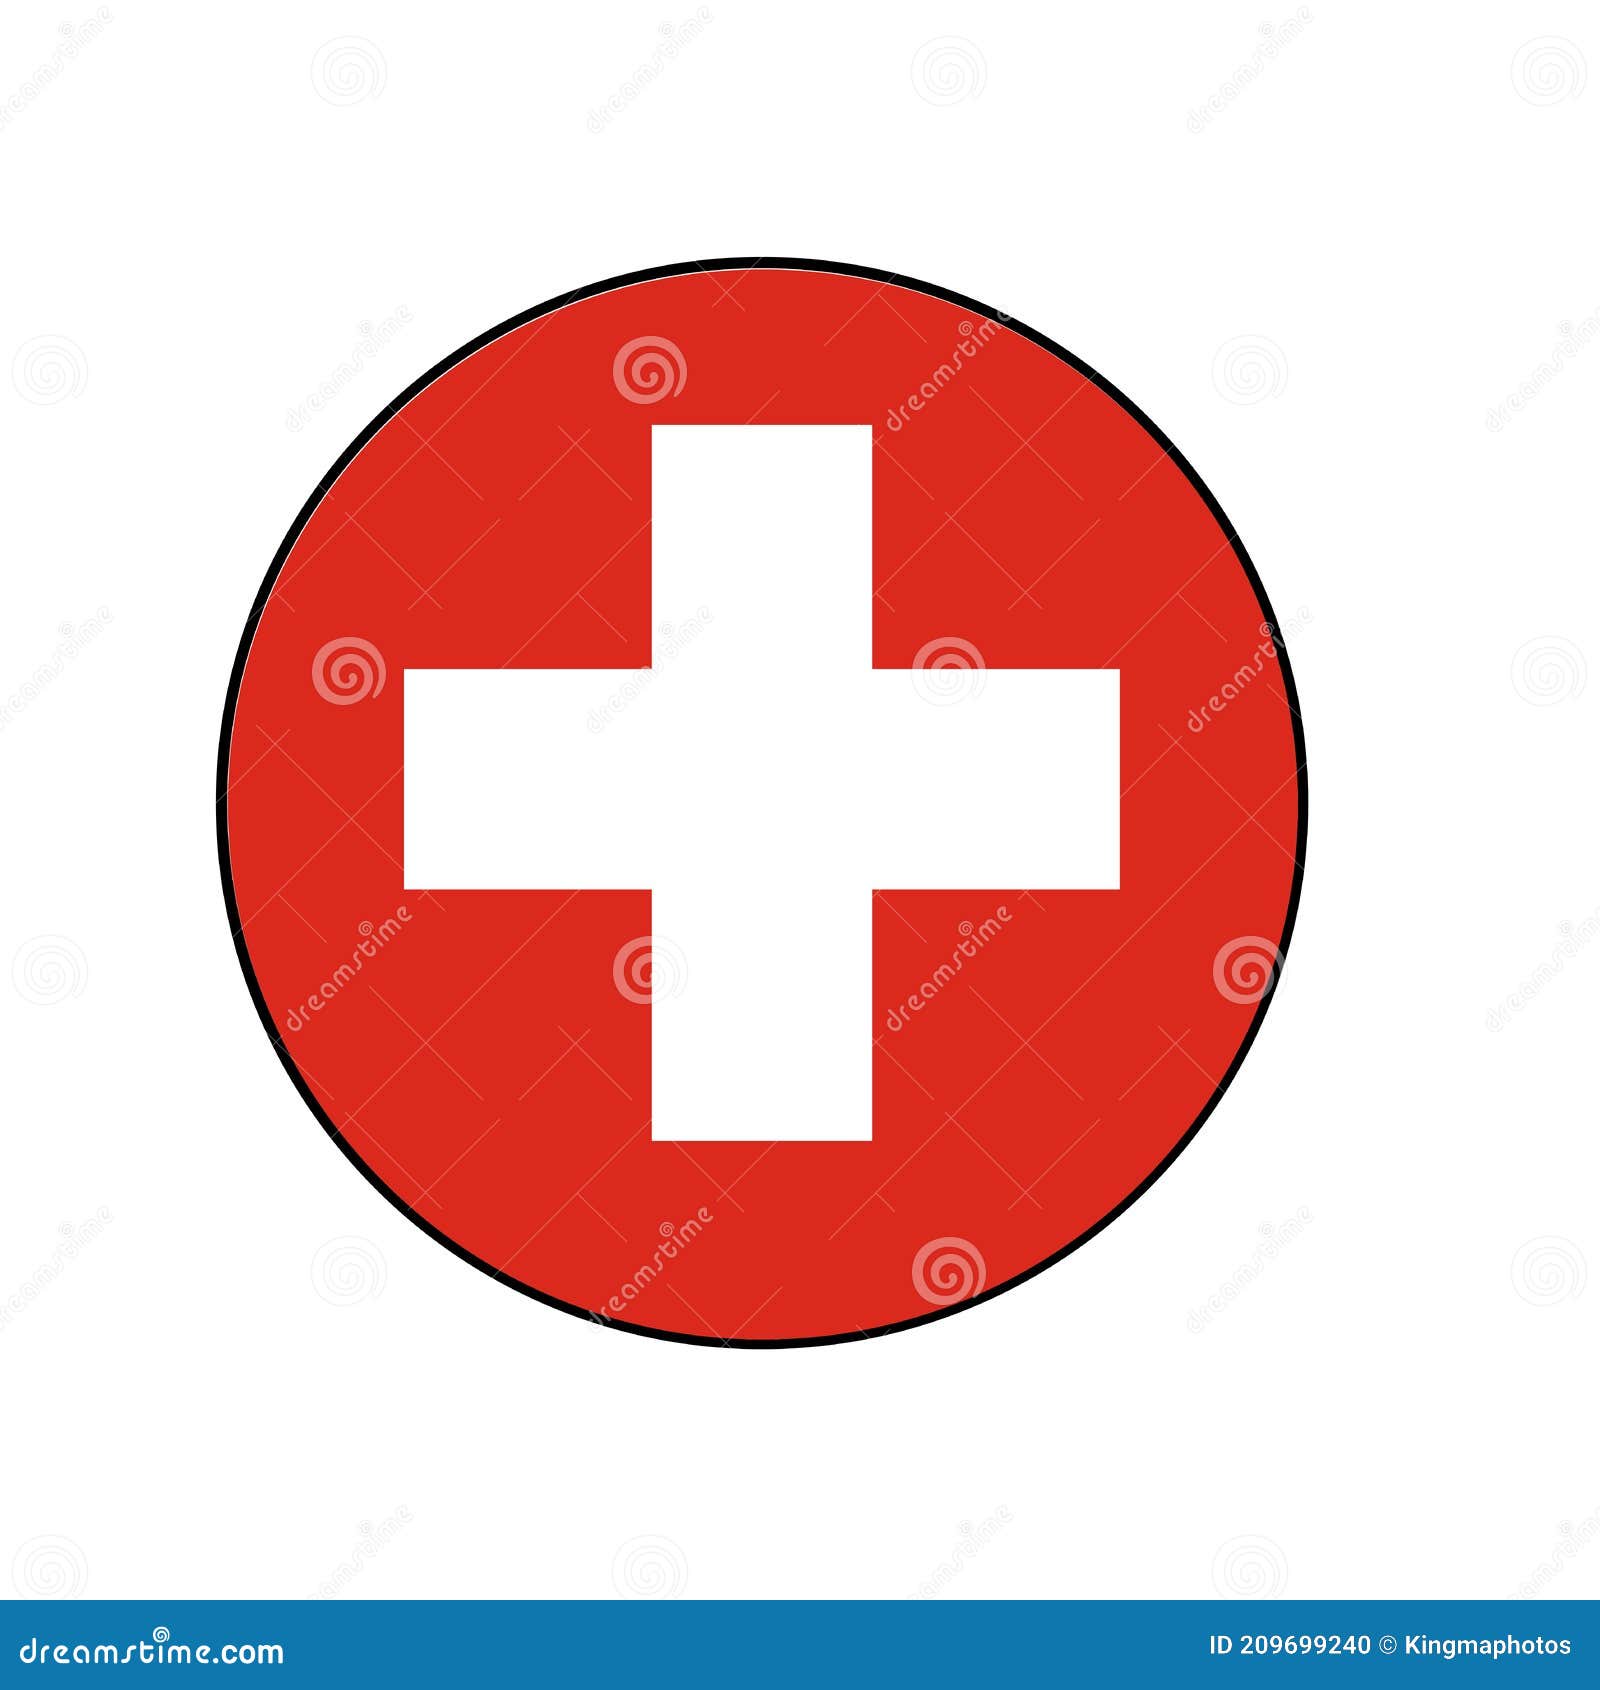 Biểu tượng cờ của châu Âu kết hợp với bản sắc đặc trưng của Thụy Sĩ - vị trí độc đáo giữa những công dân các nước châu Âu. Đến với những hình ảnh liên quan, bạn sẽ có cơ hội tham quan toàn cảnh đất nước hữu tình này một cách hoàn hảo nhất.